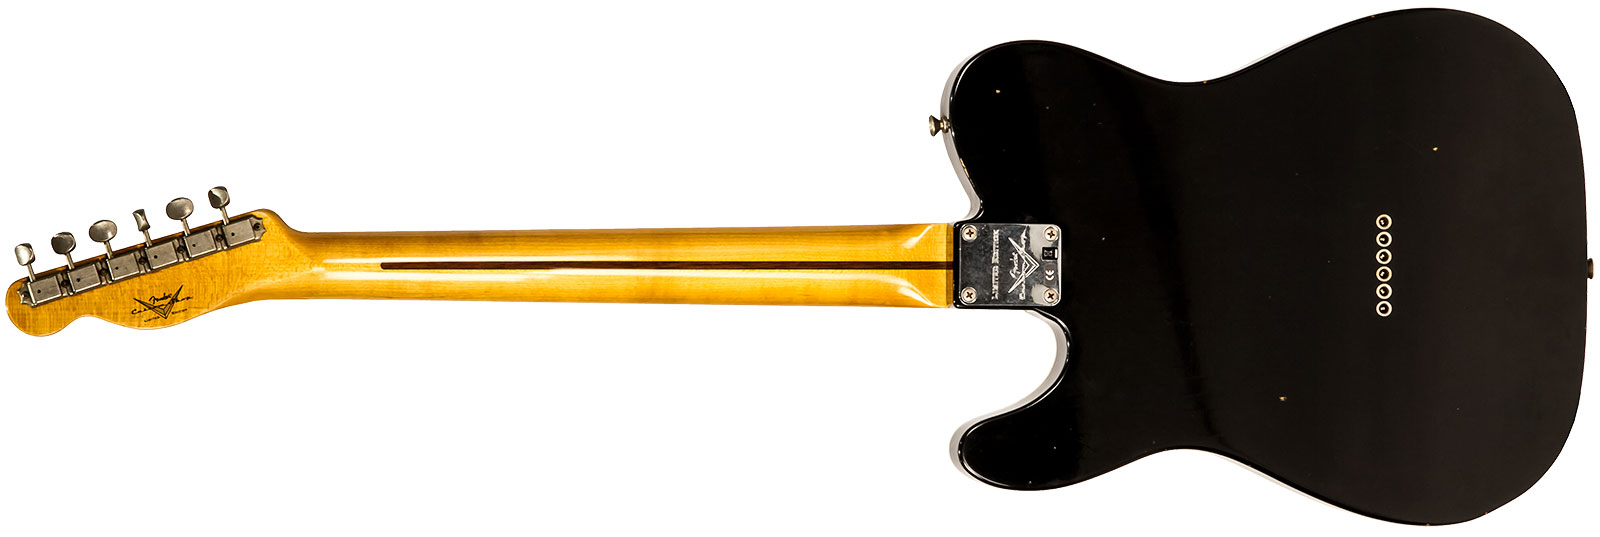 Fender Custom Shop Double Esquire/tele Custom 2s Ht Mn #r97434 - Journeyman Relic Aged Pink Paisley - Guitare Électrique 1/2 Caisse - Variation 1